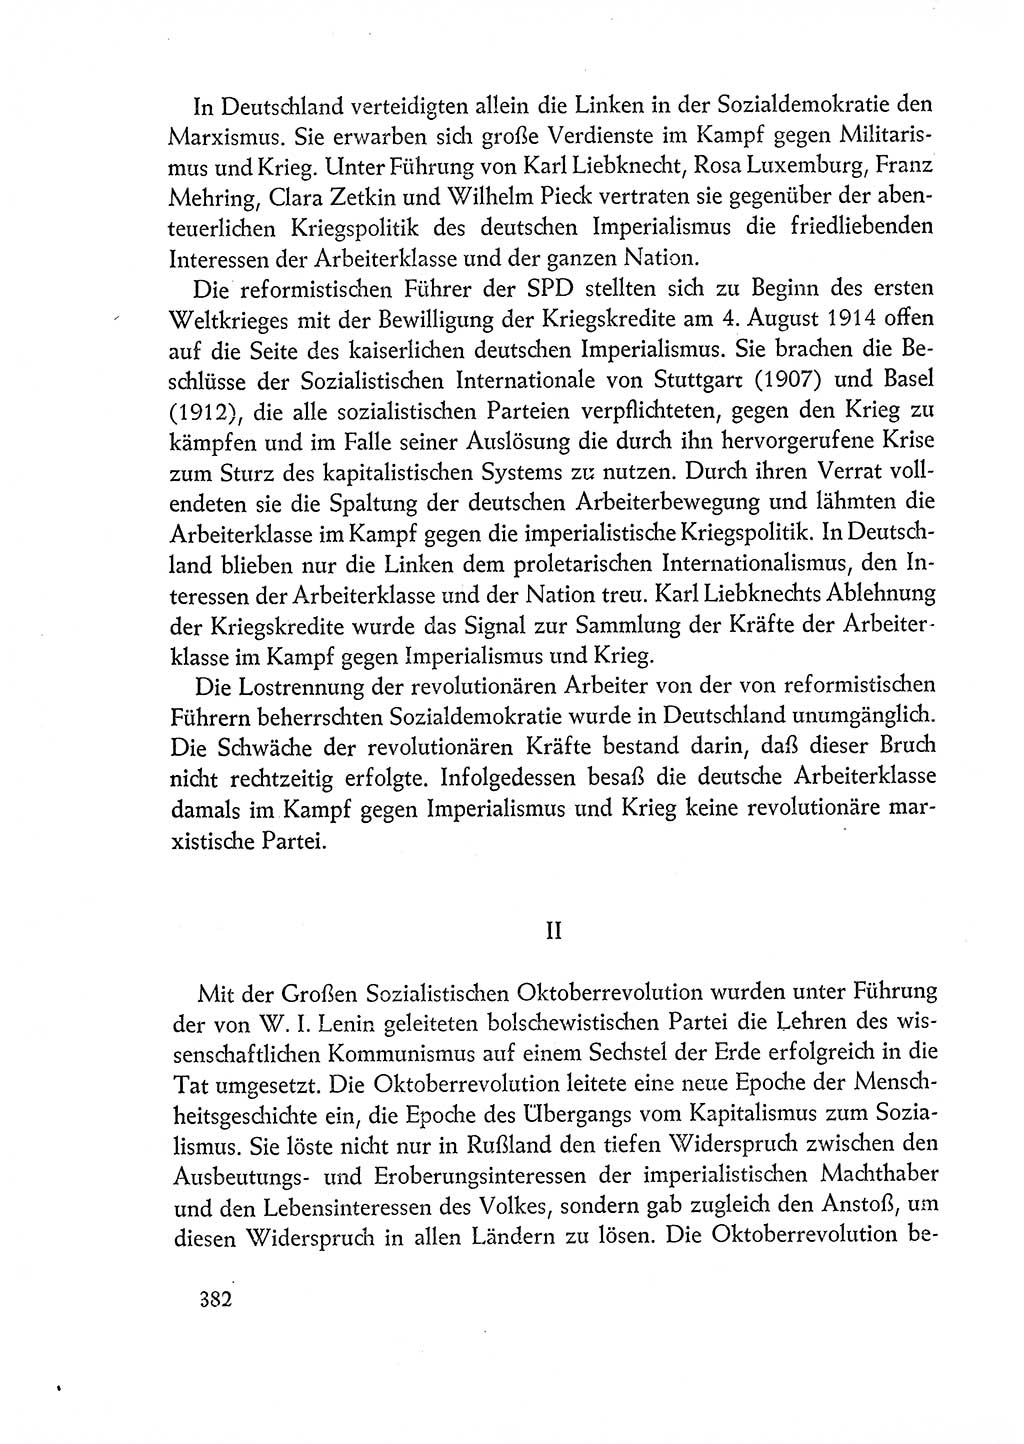 Dokumente der Sozialistischen Einheitspartei Deutschlands (SED) [Deutsche Demokratische Republik (DDR)] 1960-1961, Seite 382 (Dok. SED DDR 1960-1961, S. 382)